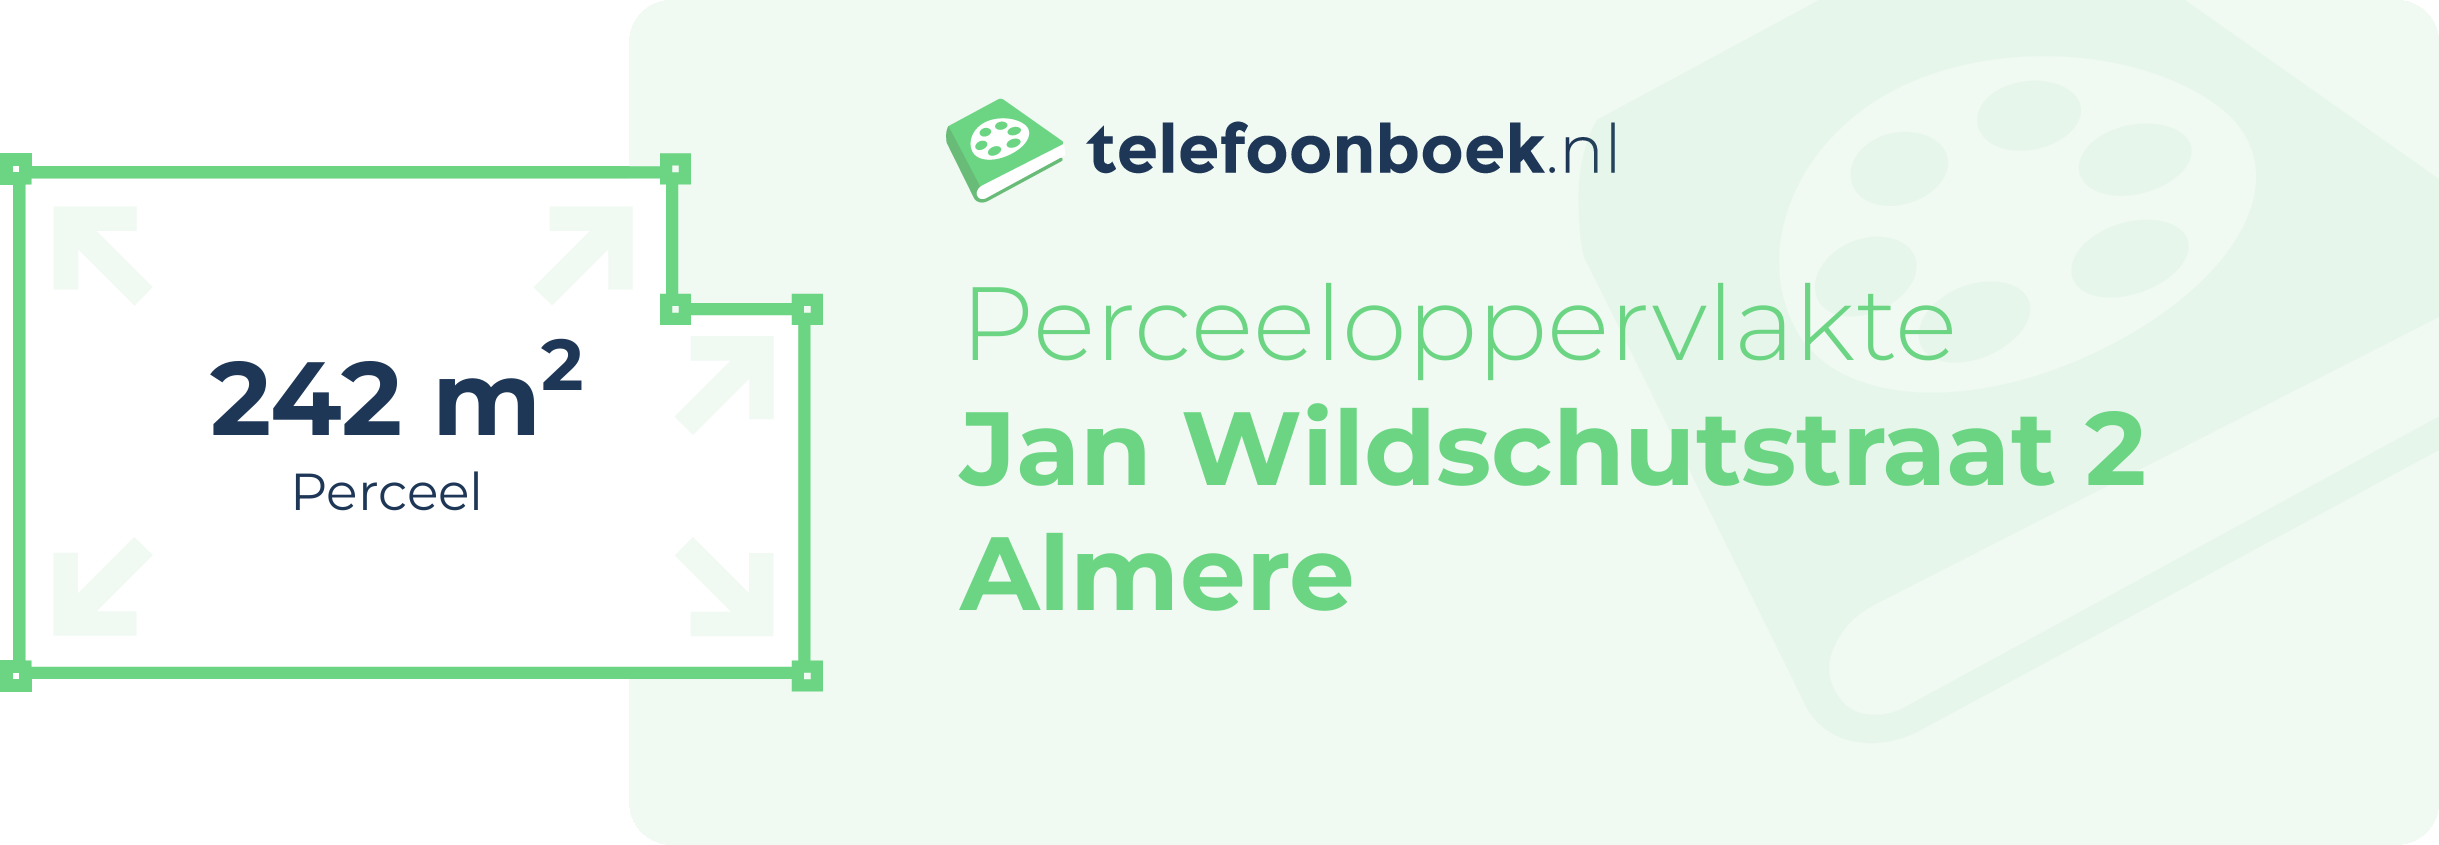 Perceeloppervlakte Jan Wildschutstraat 2 Almere